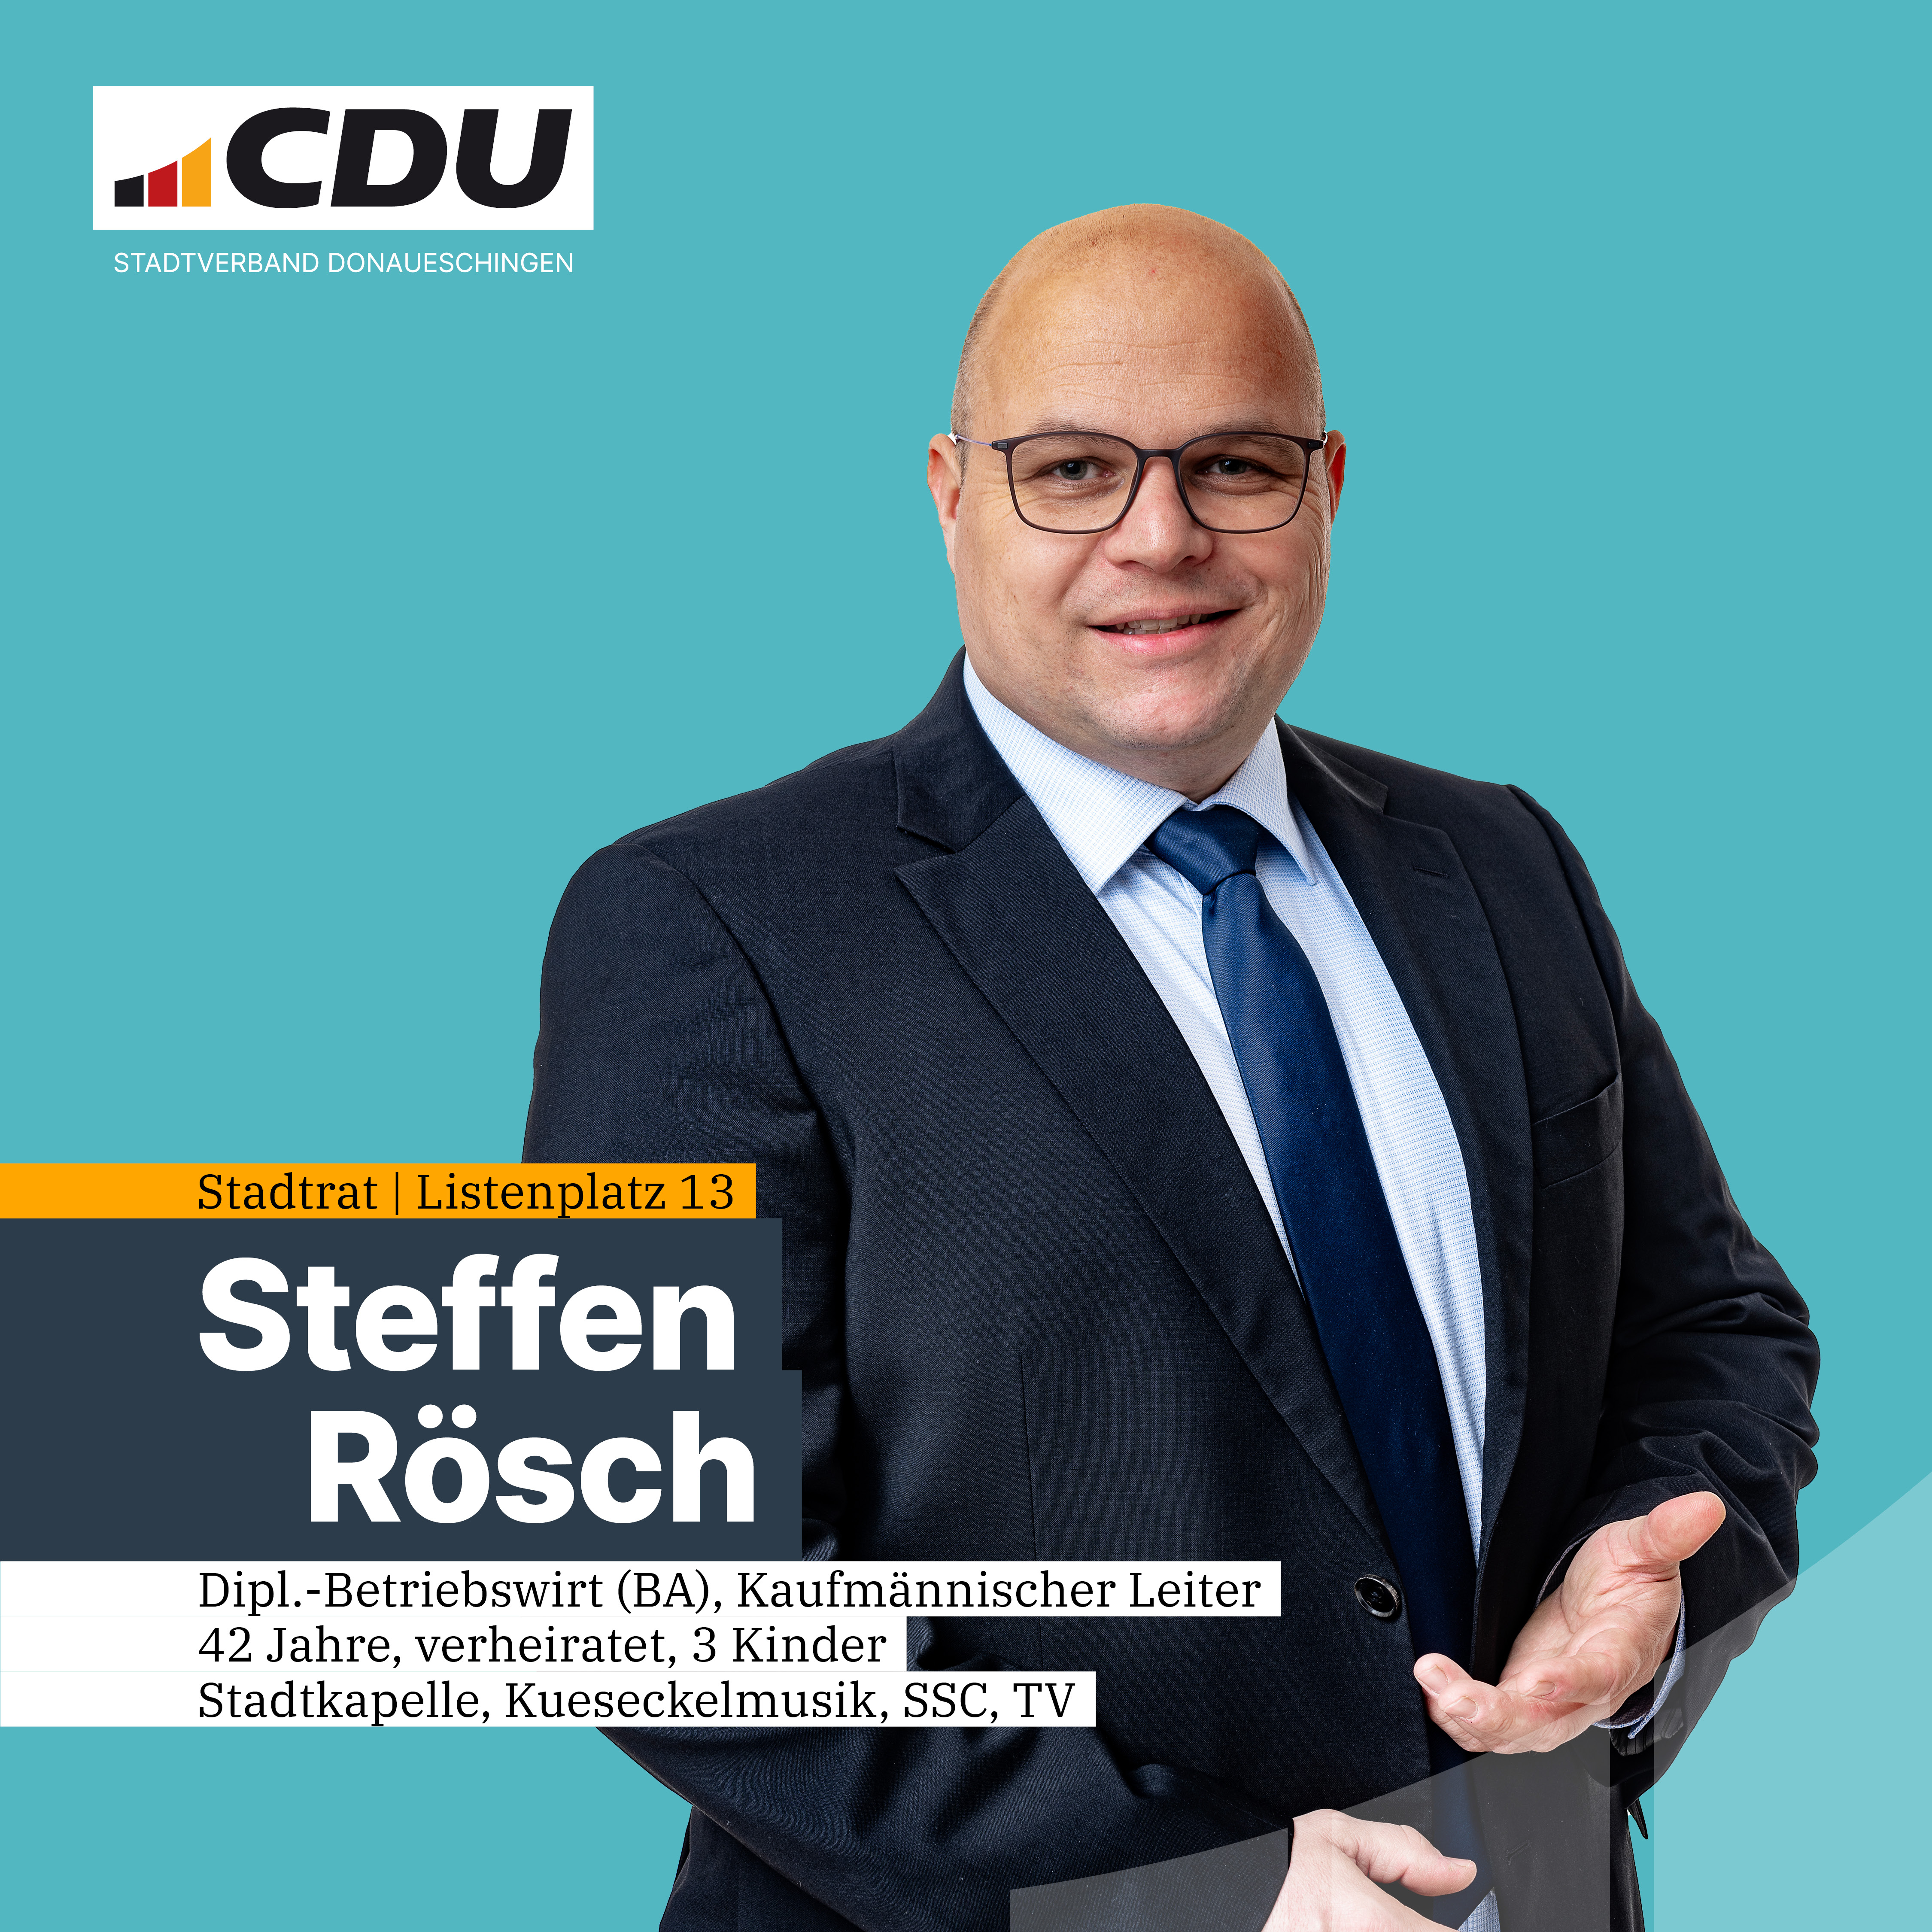  Steffen Rsch